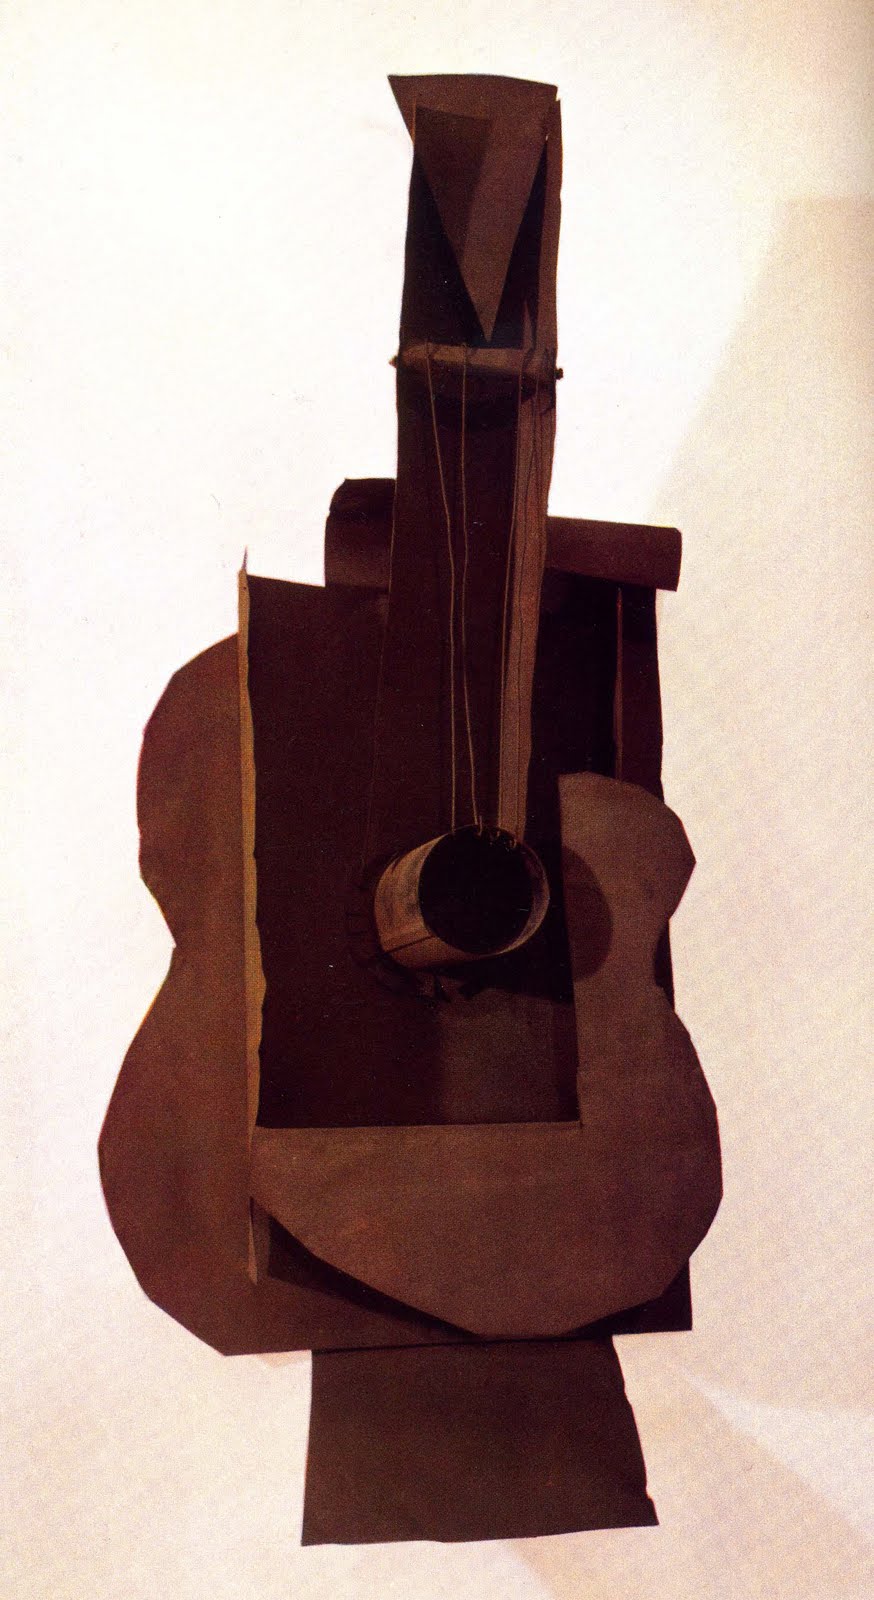 fig 2 "Guitar"